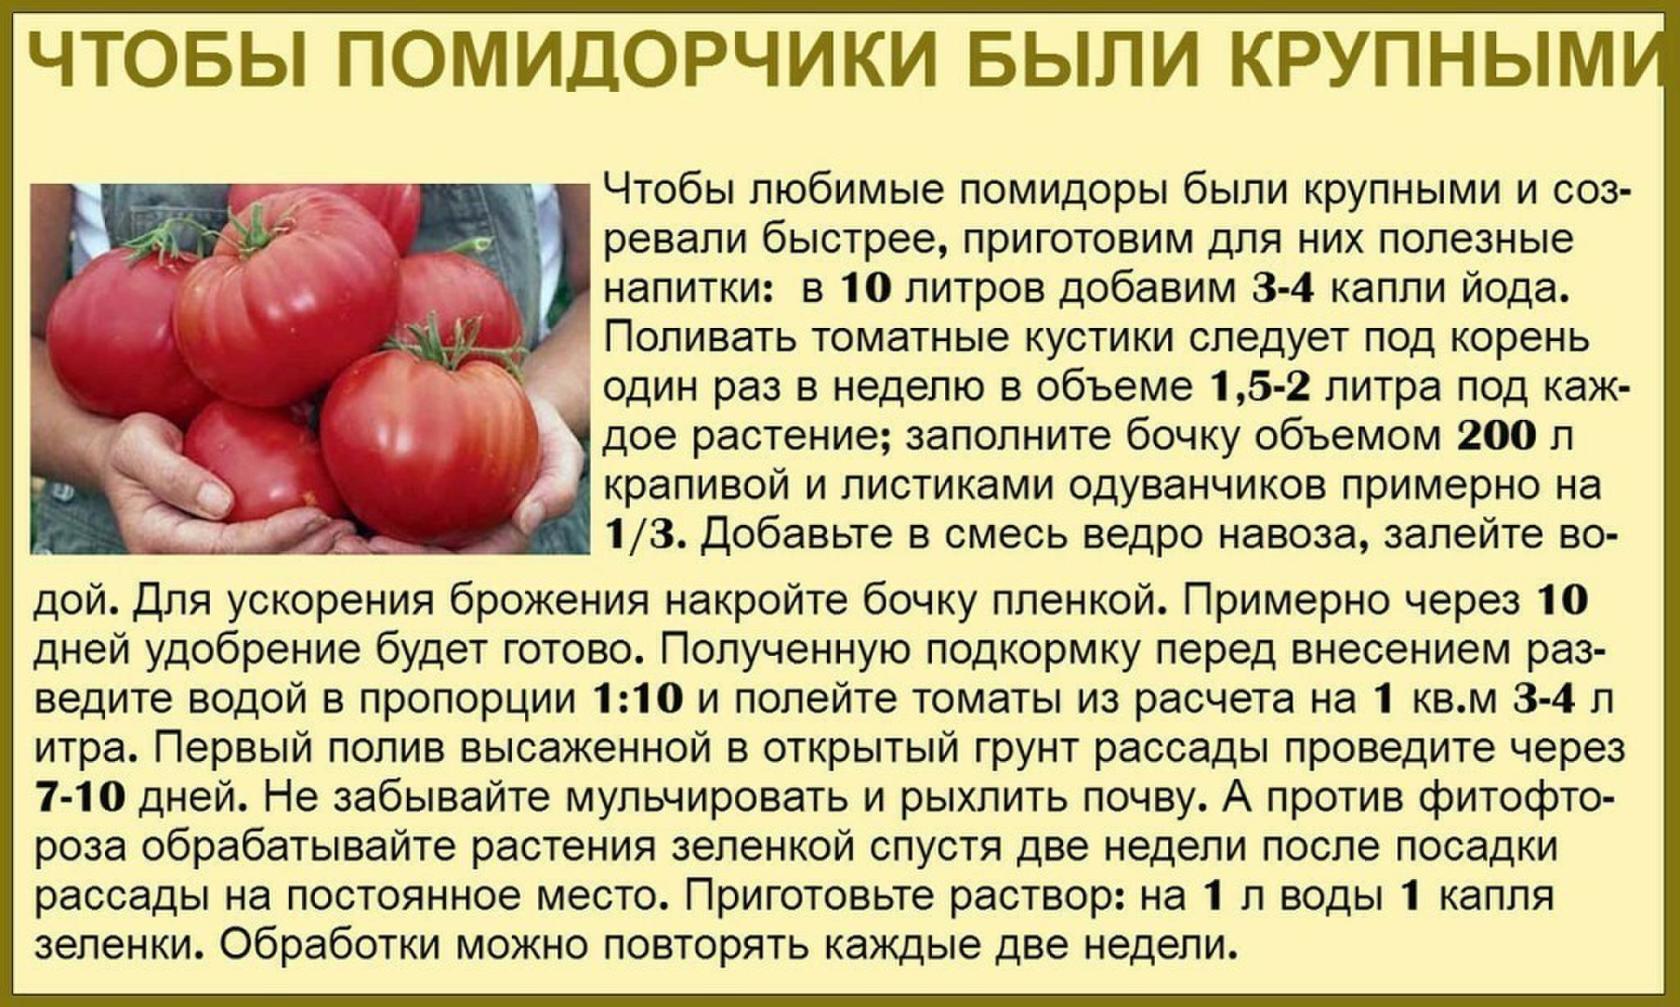 Аммиак для рассады помидор. Таблица подкормки томатов. Советы садоводам и огородникам. Советы про томаты. Советы для огородников.